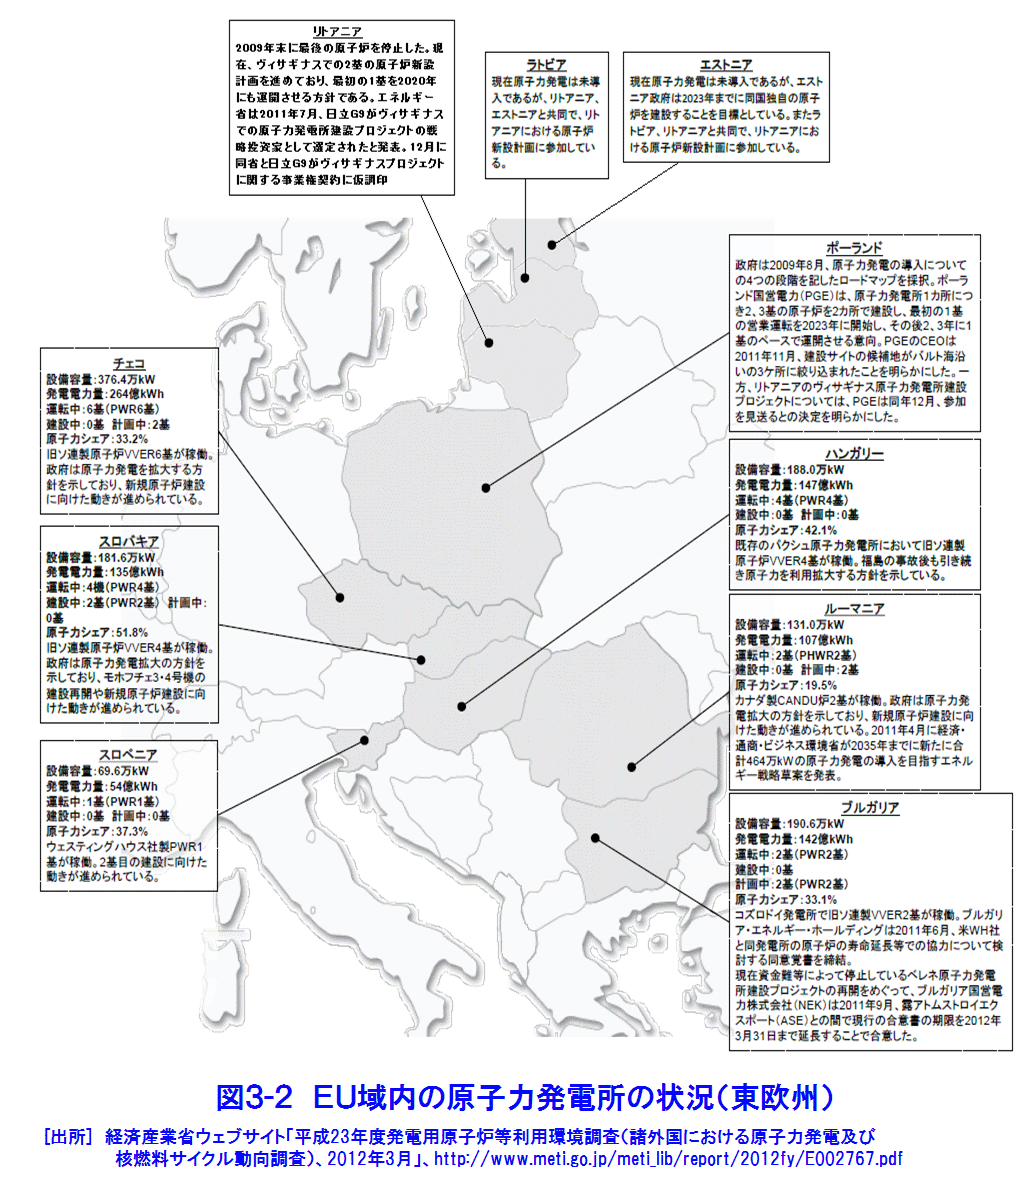 図３-２  EU域内の原子力発電所の状況（東欧州）